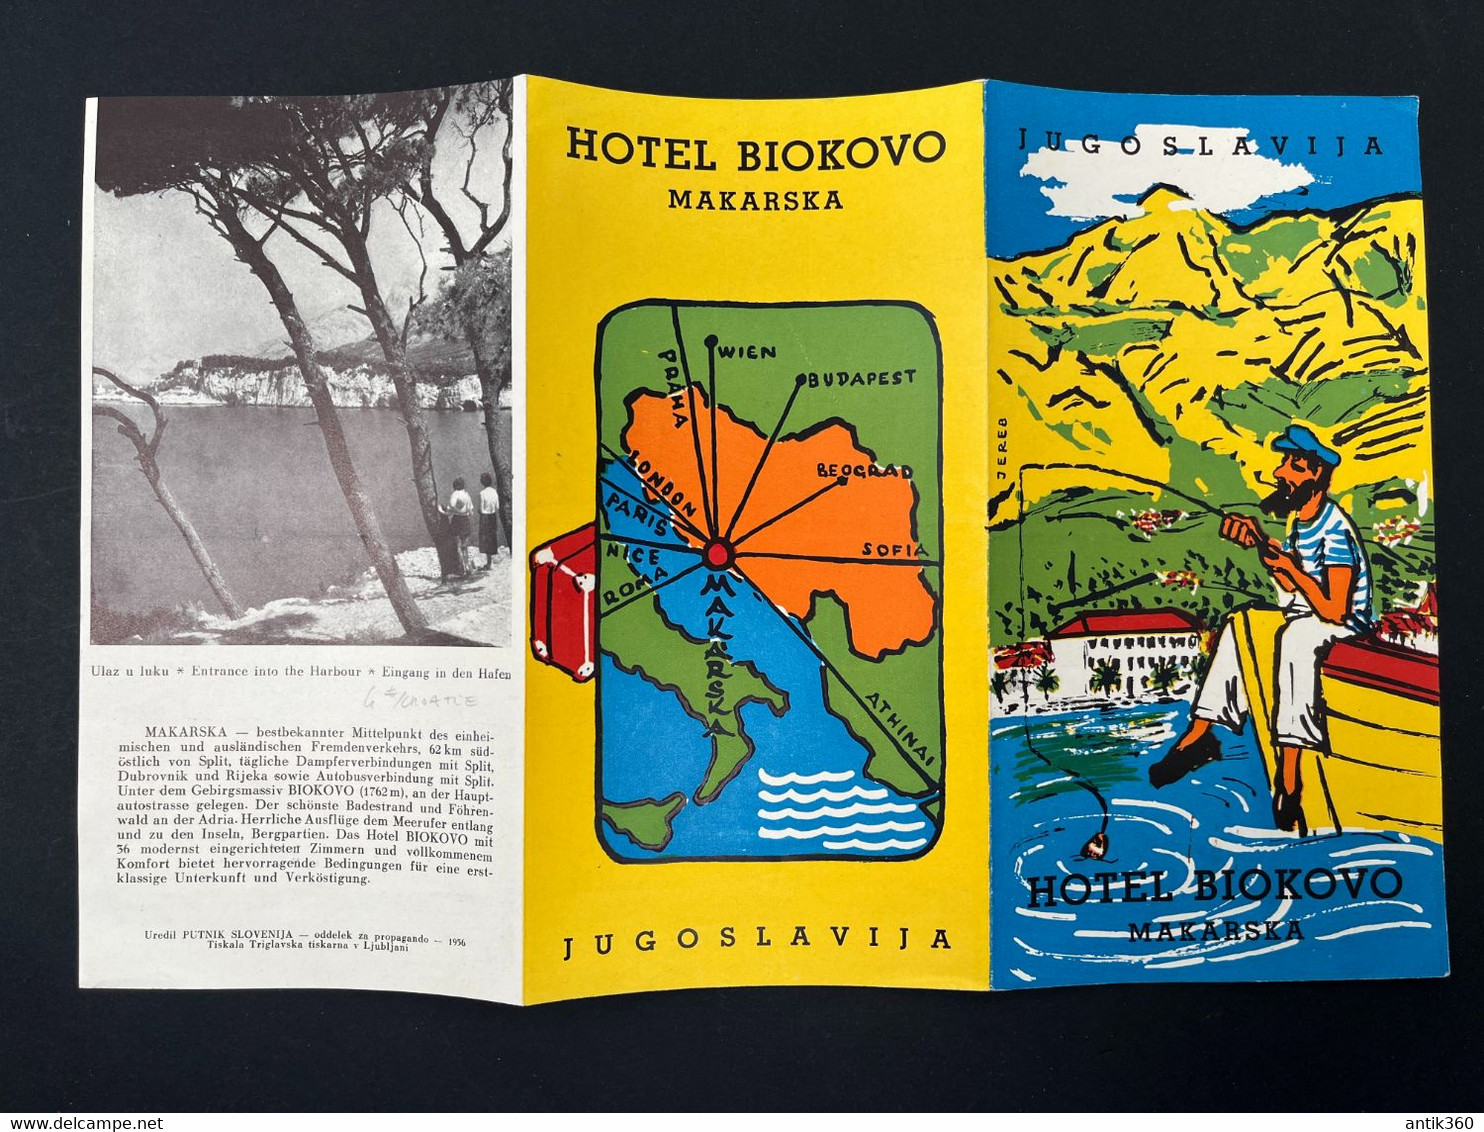 Ancien Dépliant Touristique Publicité Hôtel HOTEL BIOKOVO MAKARSKA Jugoslavia Yougoslavie - Tourism Brochures